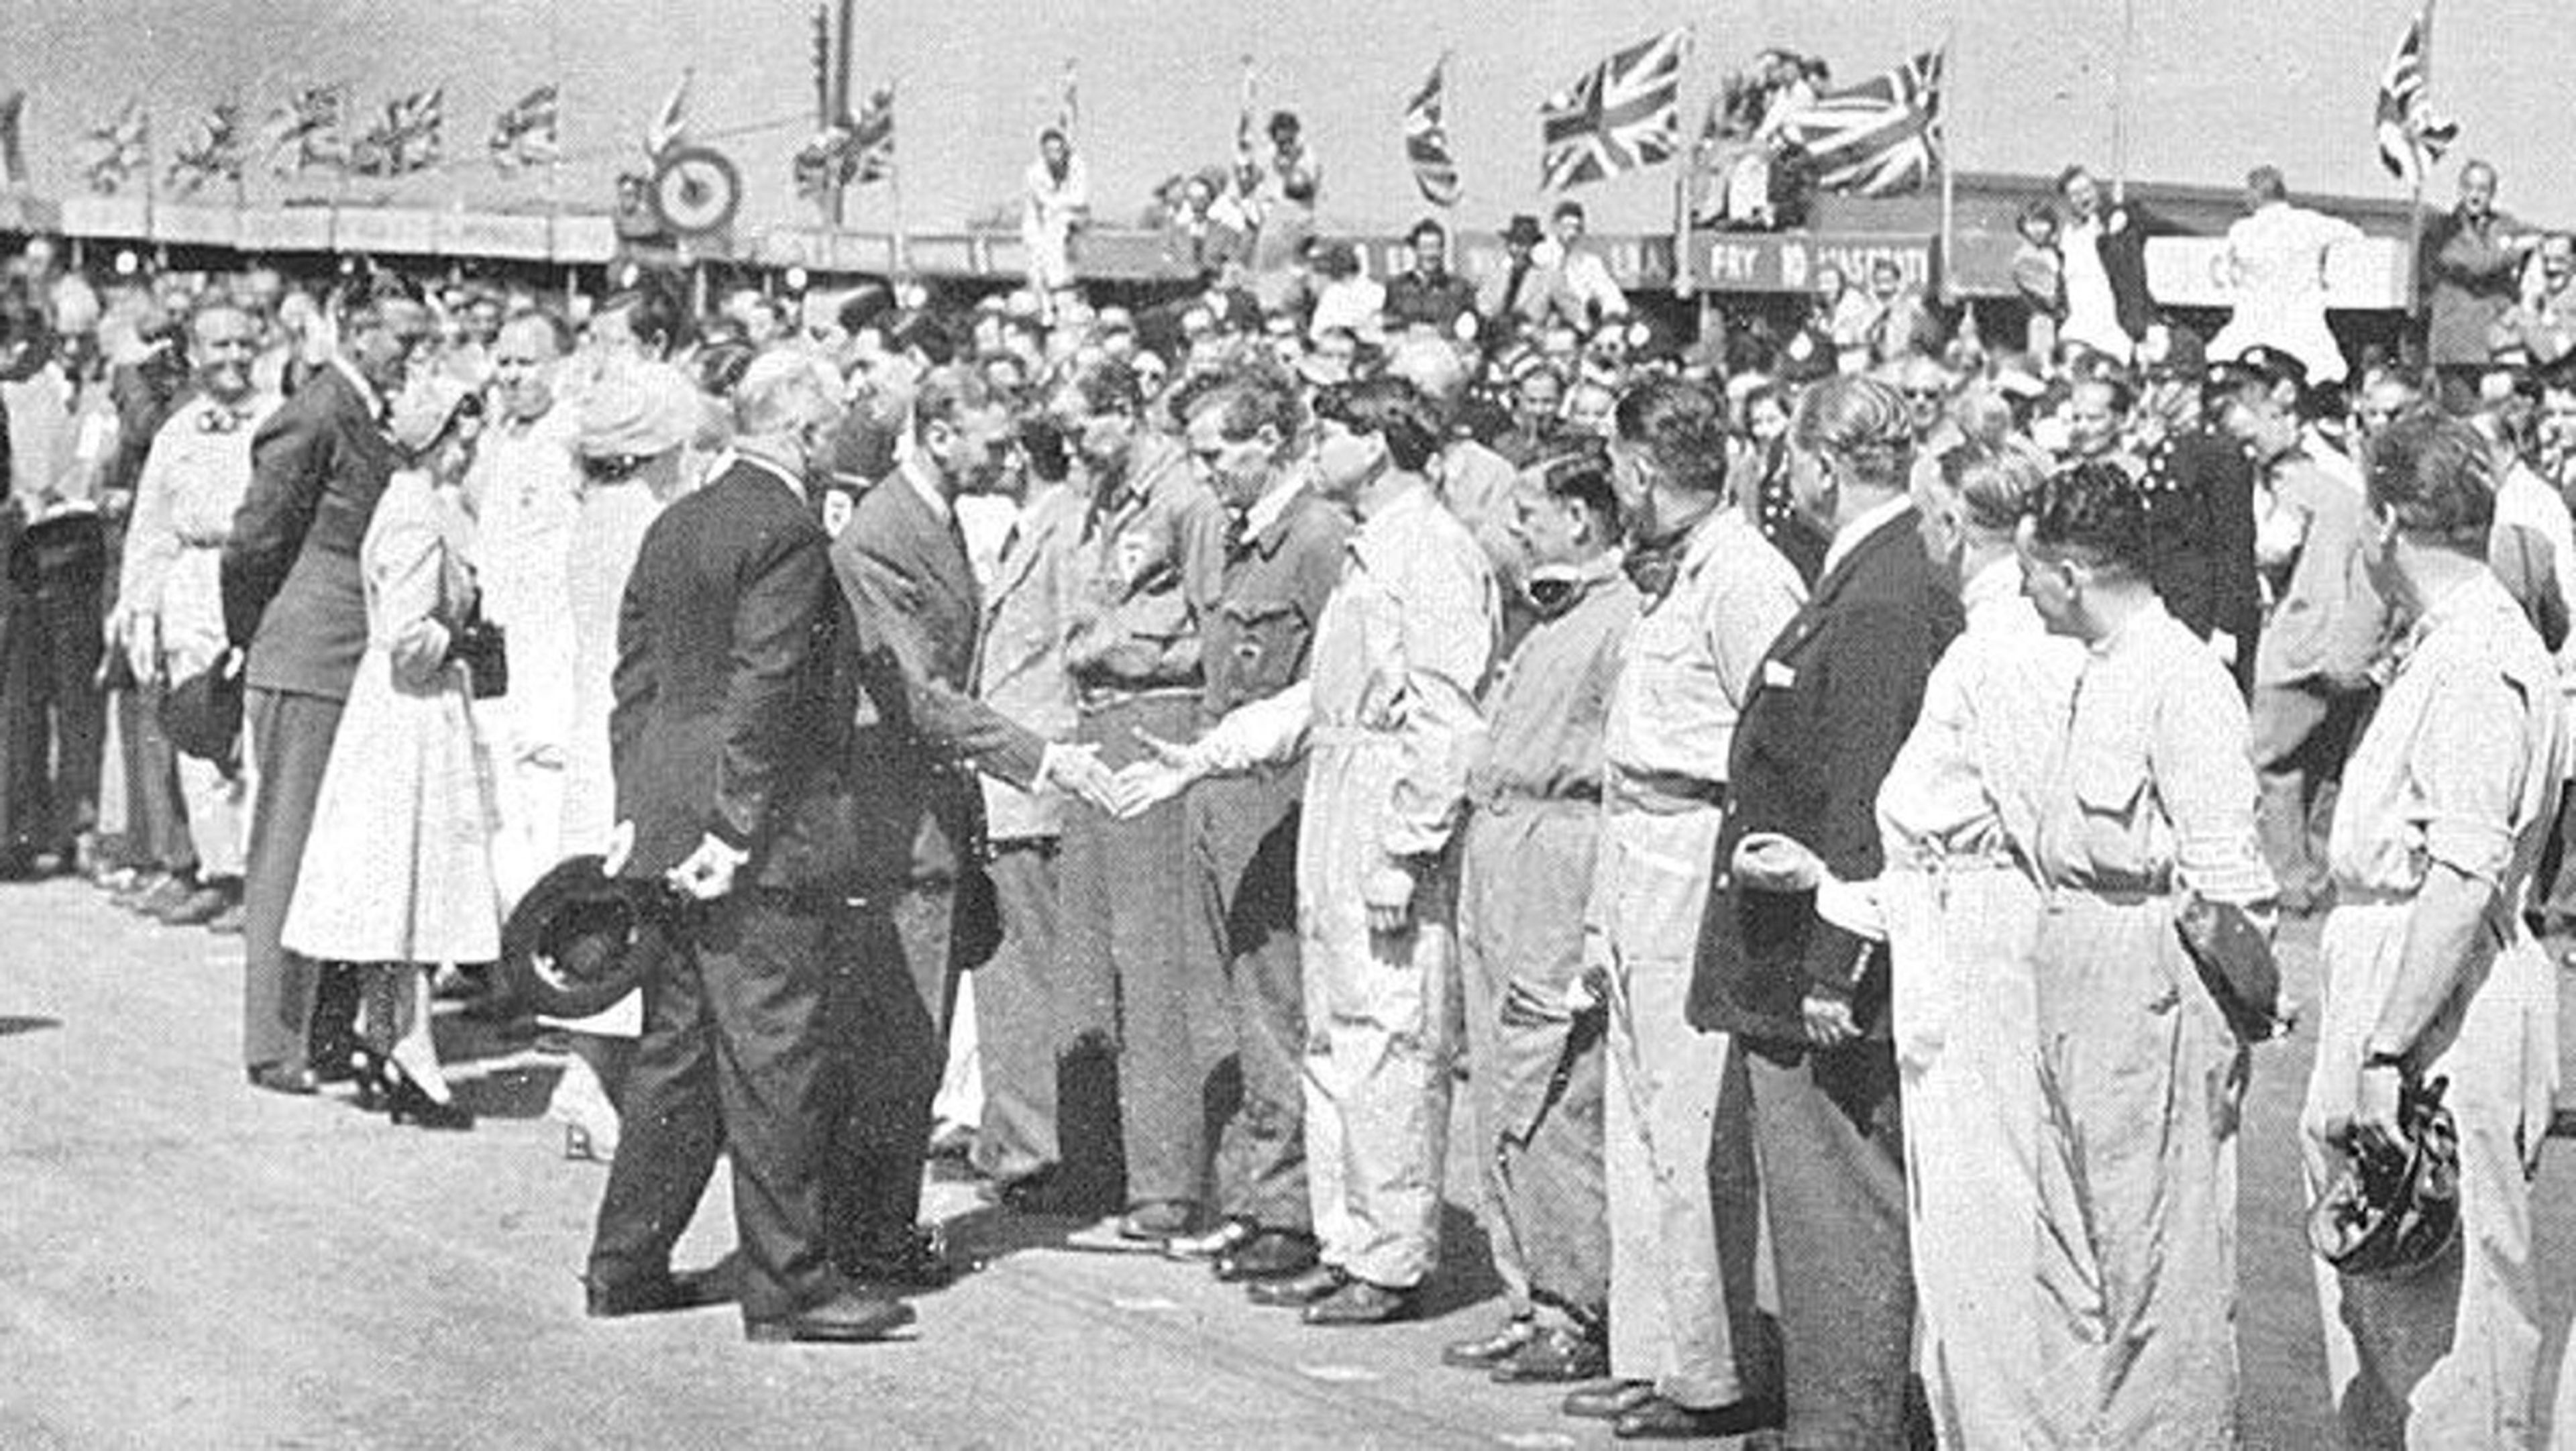 Los reyes británicos en Silverstone 1950